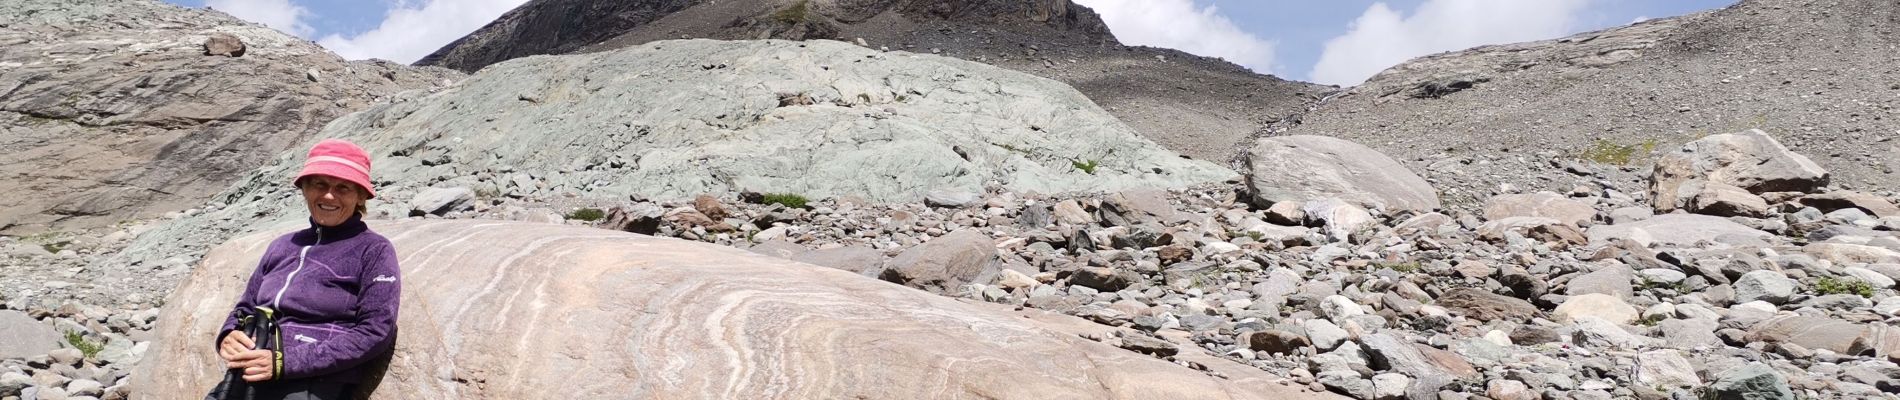 Trail Walking Bessans - glacier du Baounet - Photo